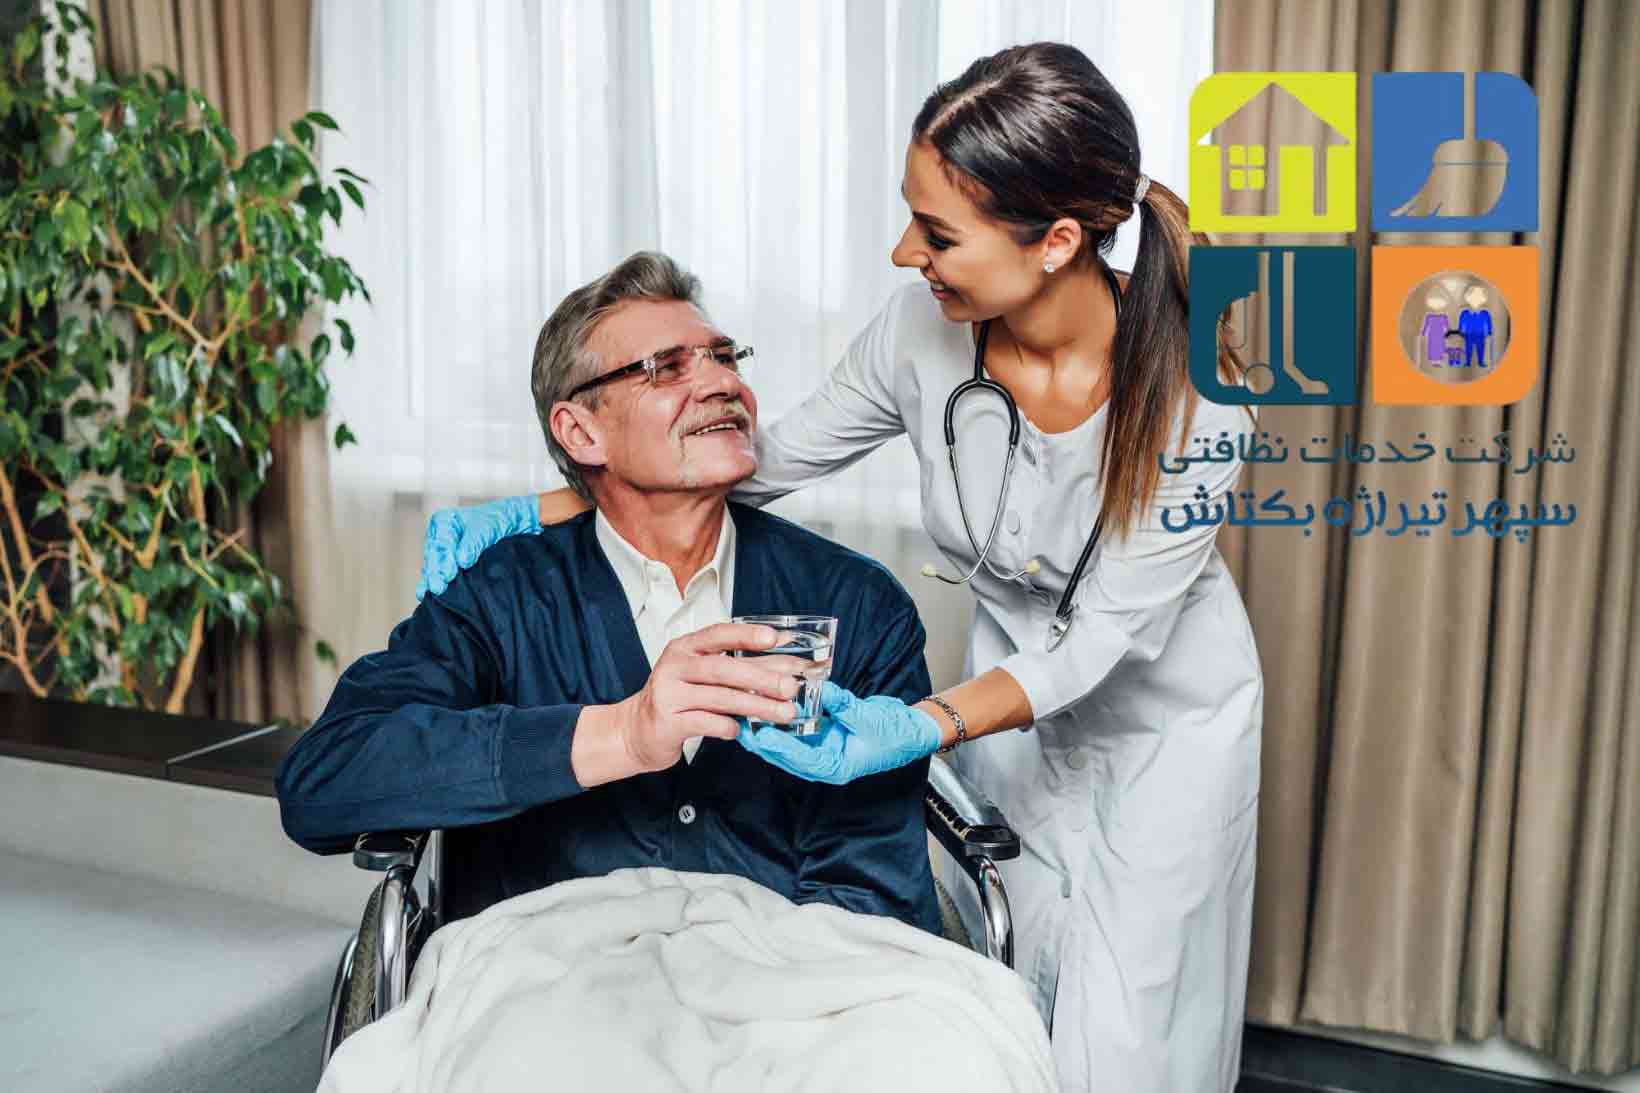 پرستار 24 ساعته سالمند - شرکت خدماتی سپهر تیراژه بکتاش